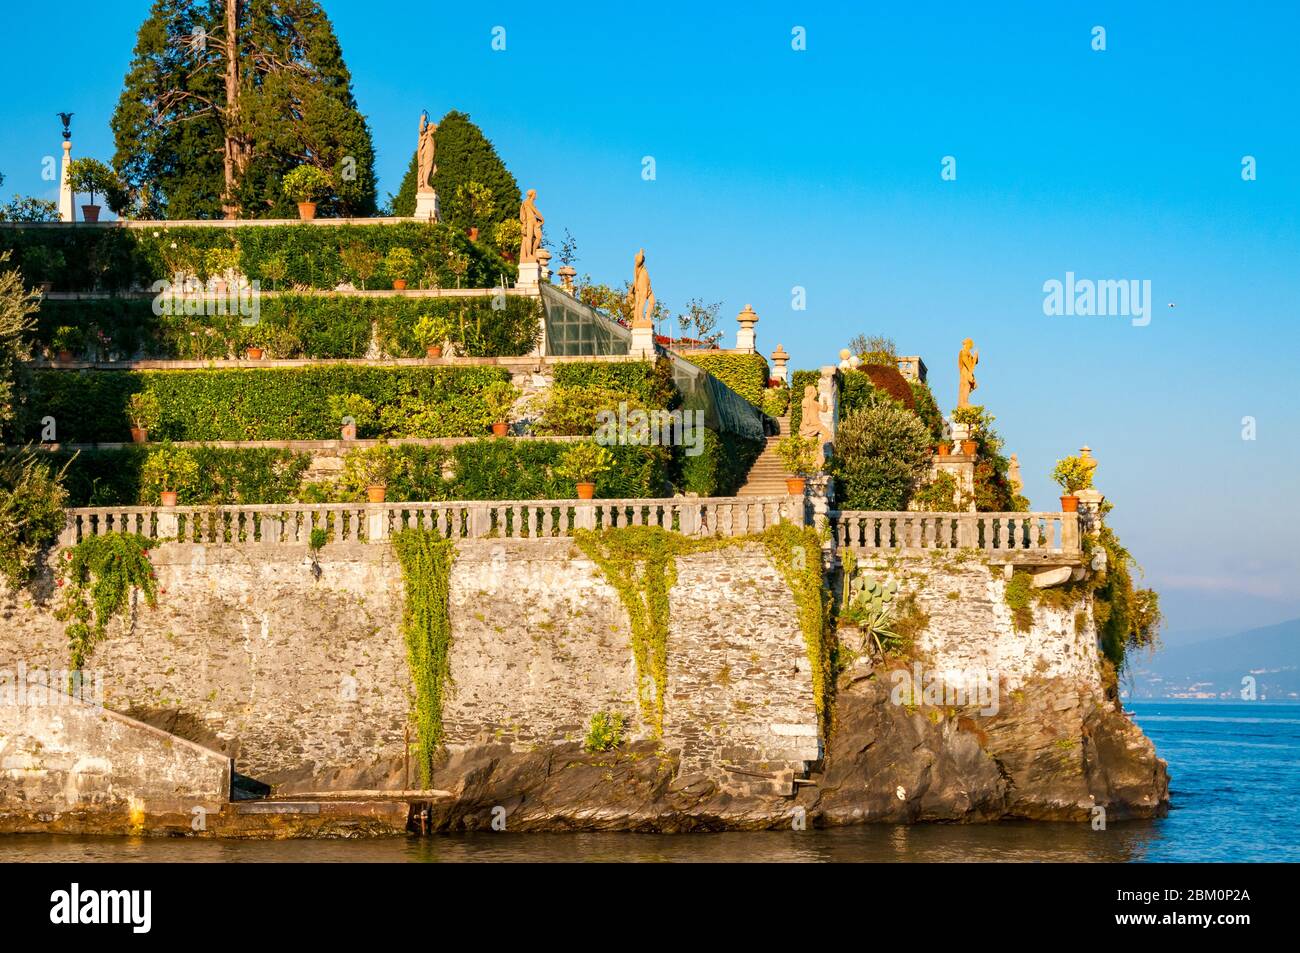 Stresa/ italien: Italienischer Garten mit Skulpturen der isola bella im maggiore See Stockfoto